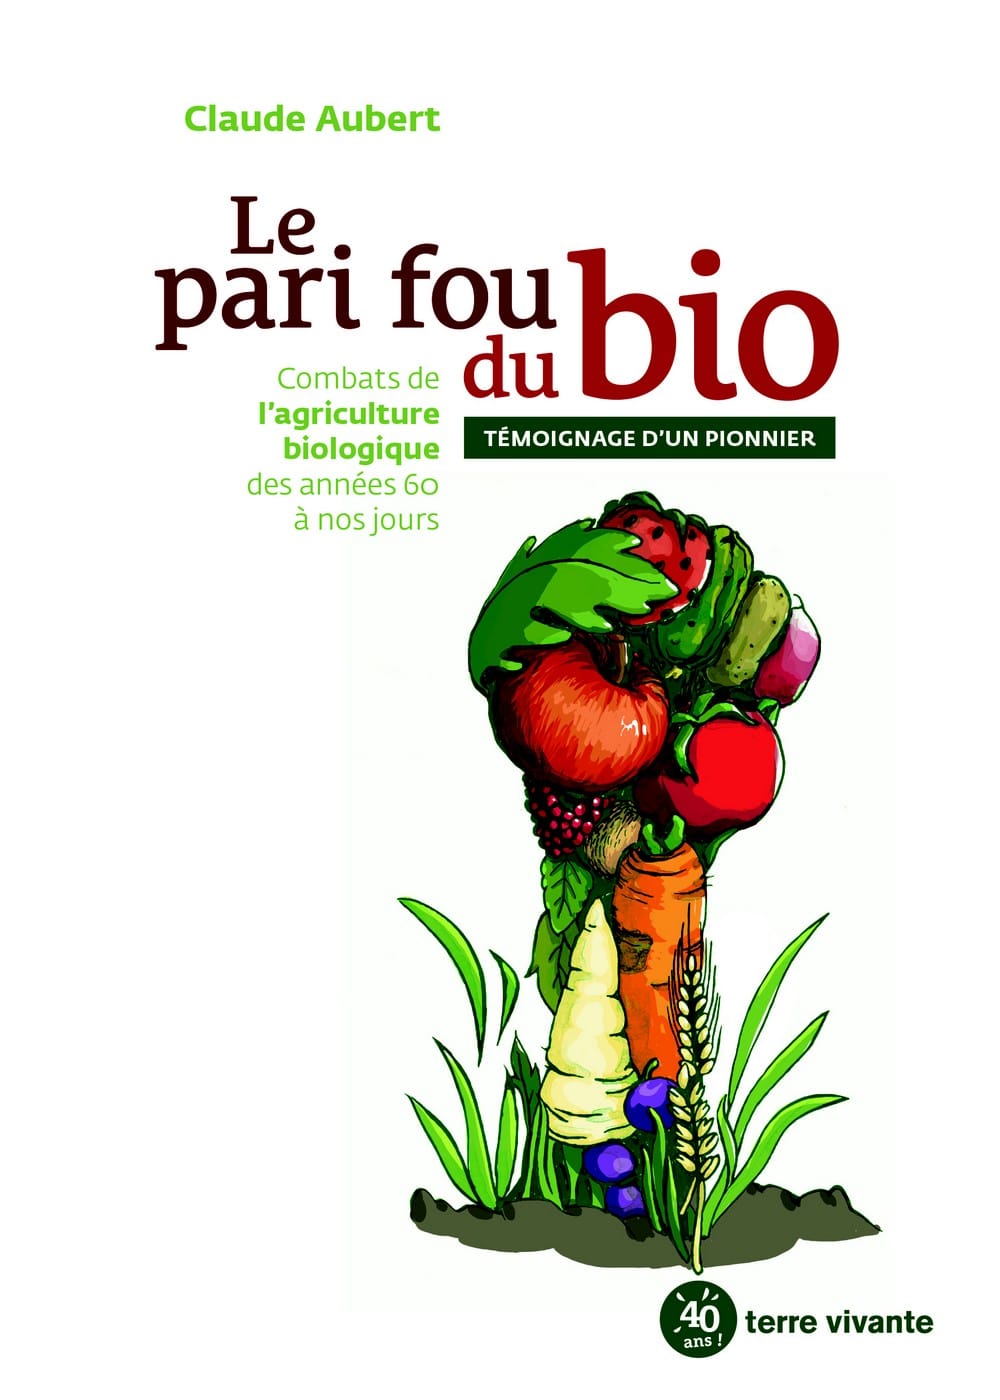 Dans Le pari fou du bio, Claude Aubert, un des pionniers de l’agriculture bio, délivre une présentation documentée de l’évolution de l’agriculture bio en France